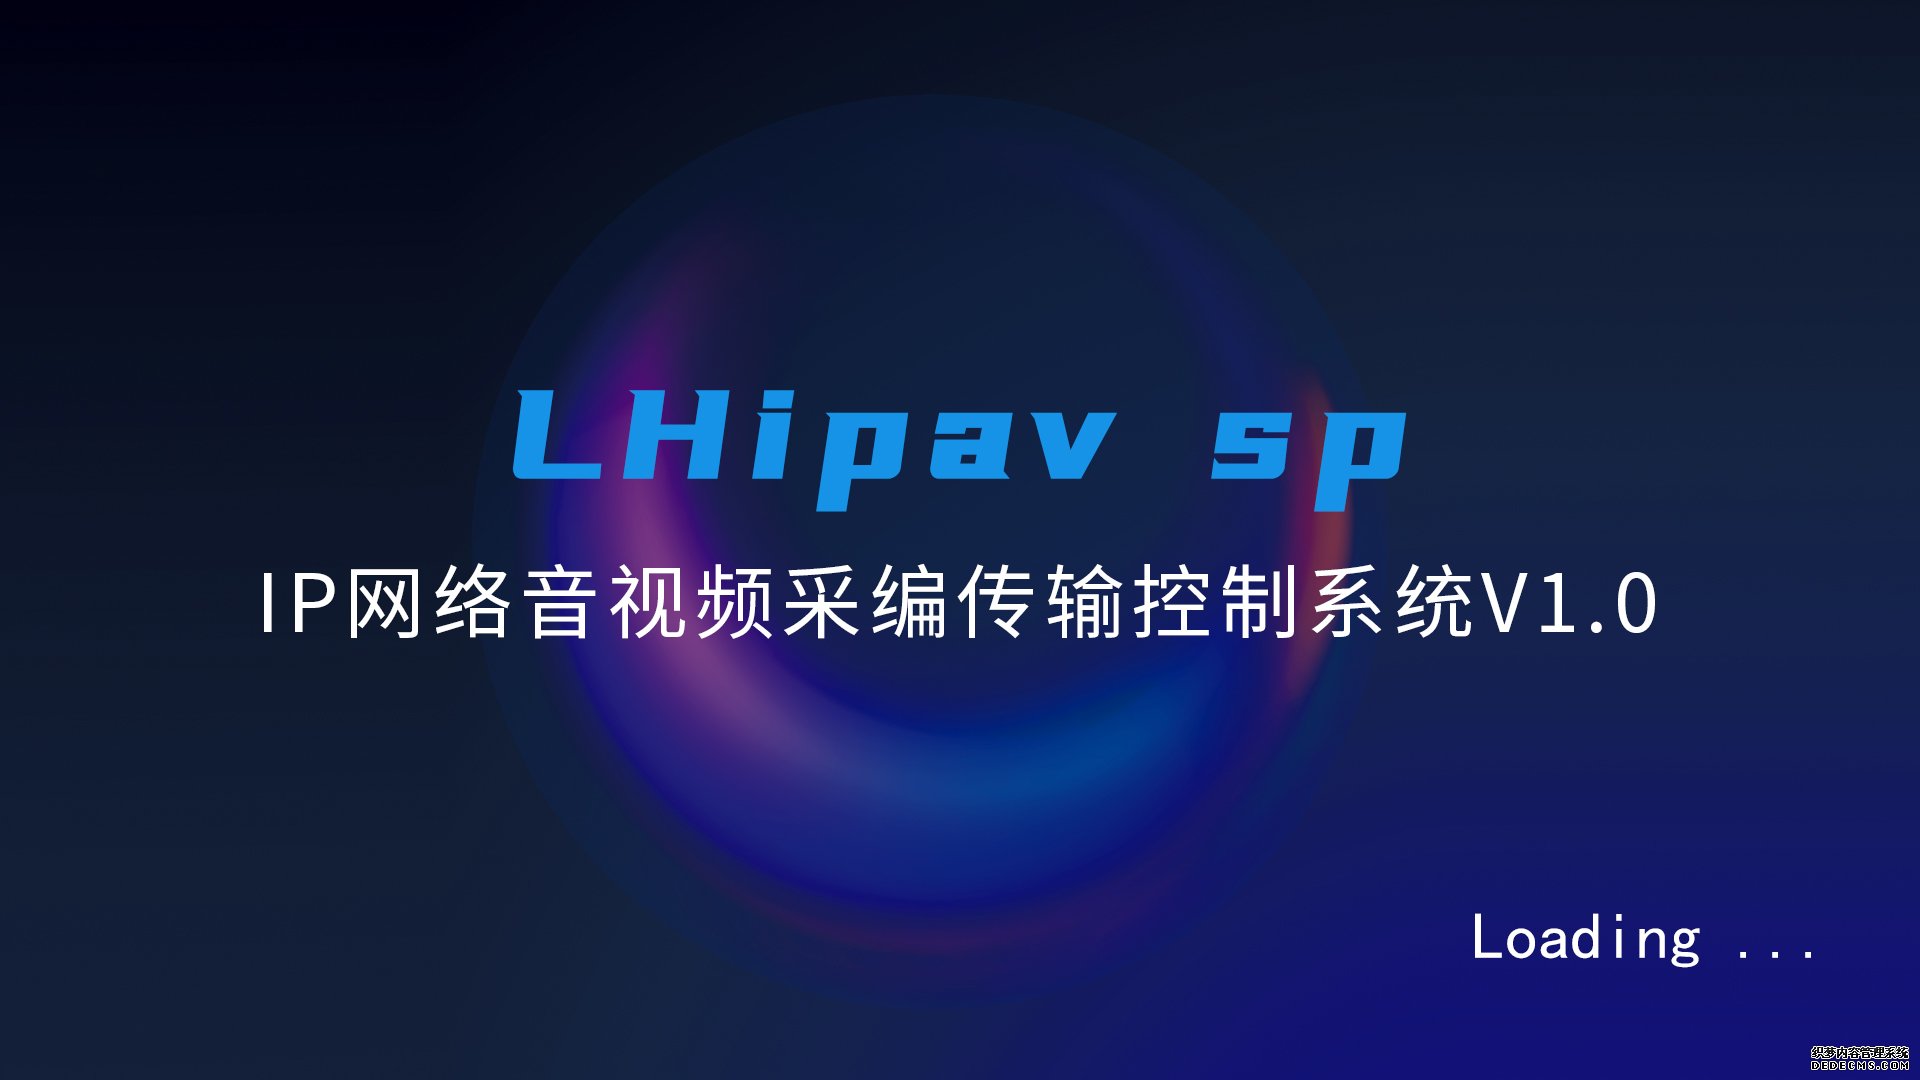 IP网络音视频采编传输控制系统 LHipavsp数字化网络化新应用